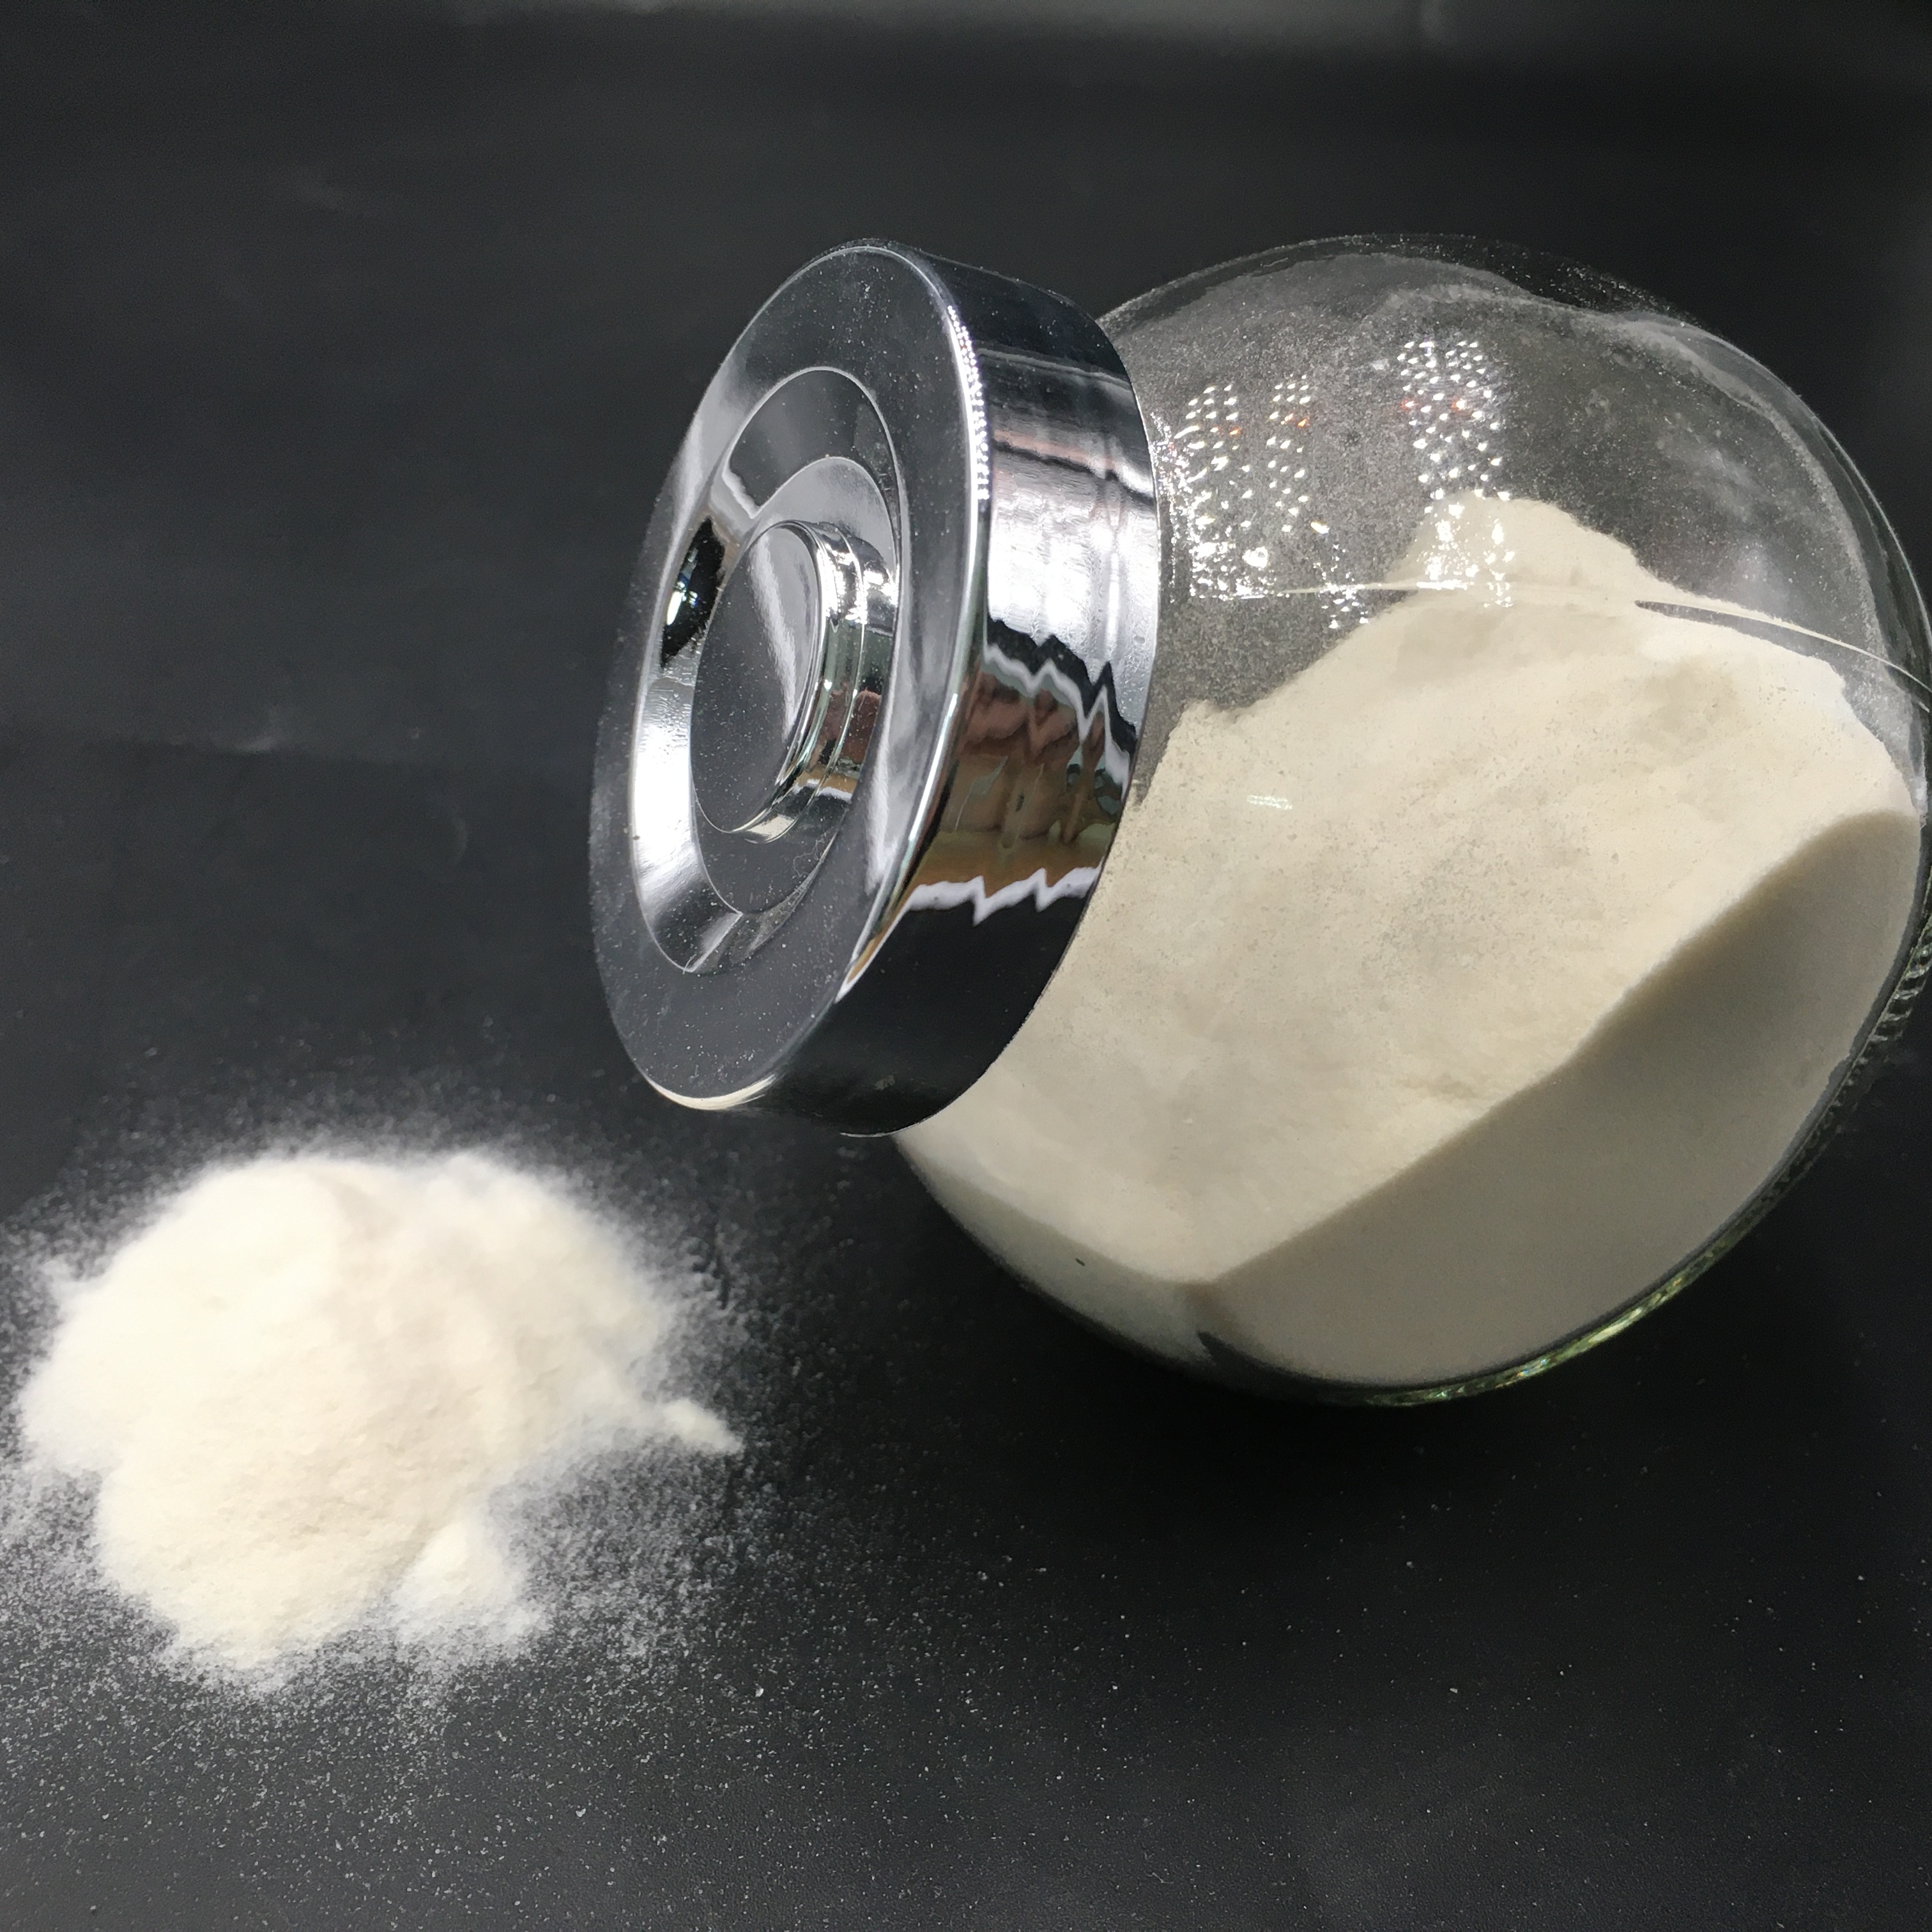 Vente chaude de qualité pahramceutique d'agar agar avec un stabilisateur de prix raisonnable Meilleure stabilisation en poudre de bonbon mou plus épais naturel CAS n ° 9002-18-0